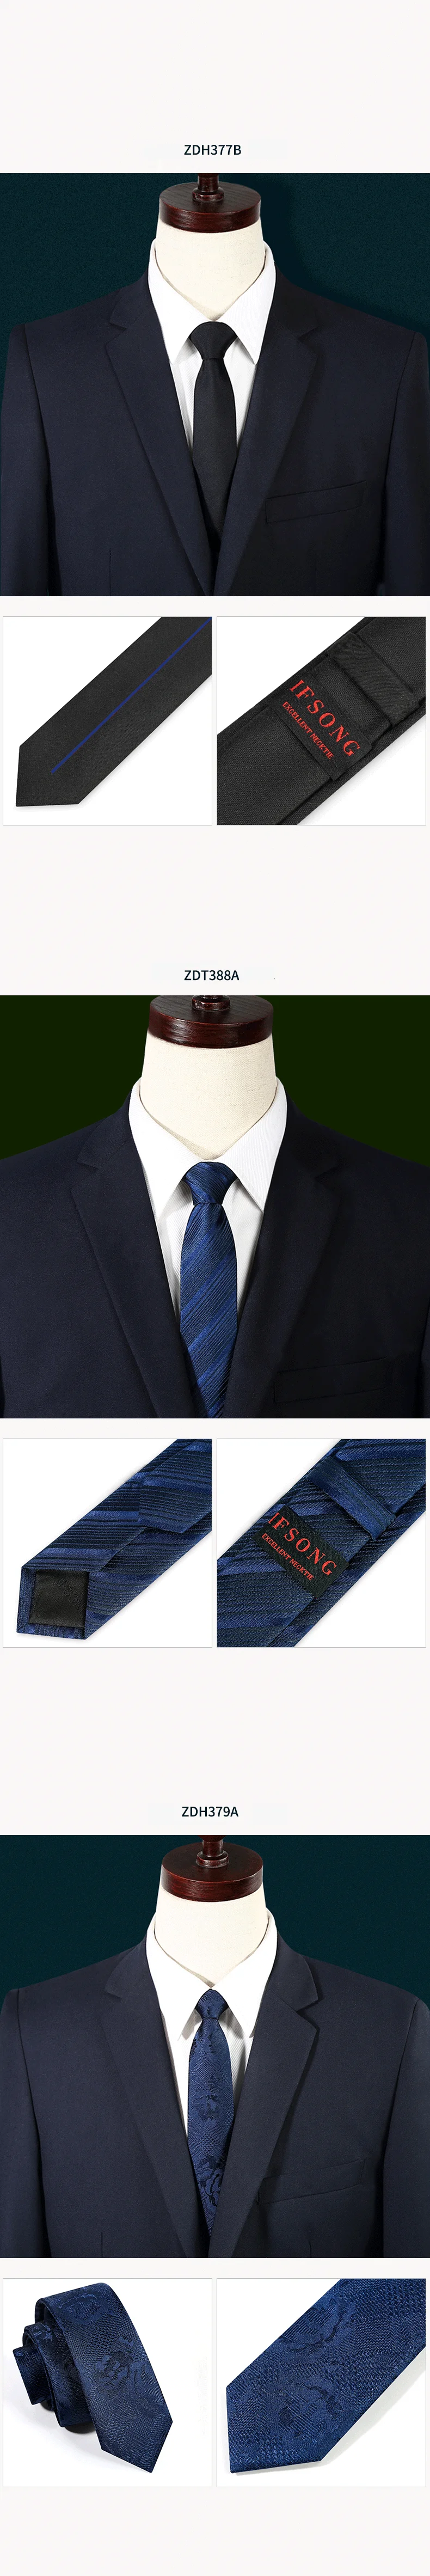 Высокое качество 2019 новые дизайнерские бренды модные деловые повседневные 5 см тонкие галстуки для мужчин Галстук Формальная работа с